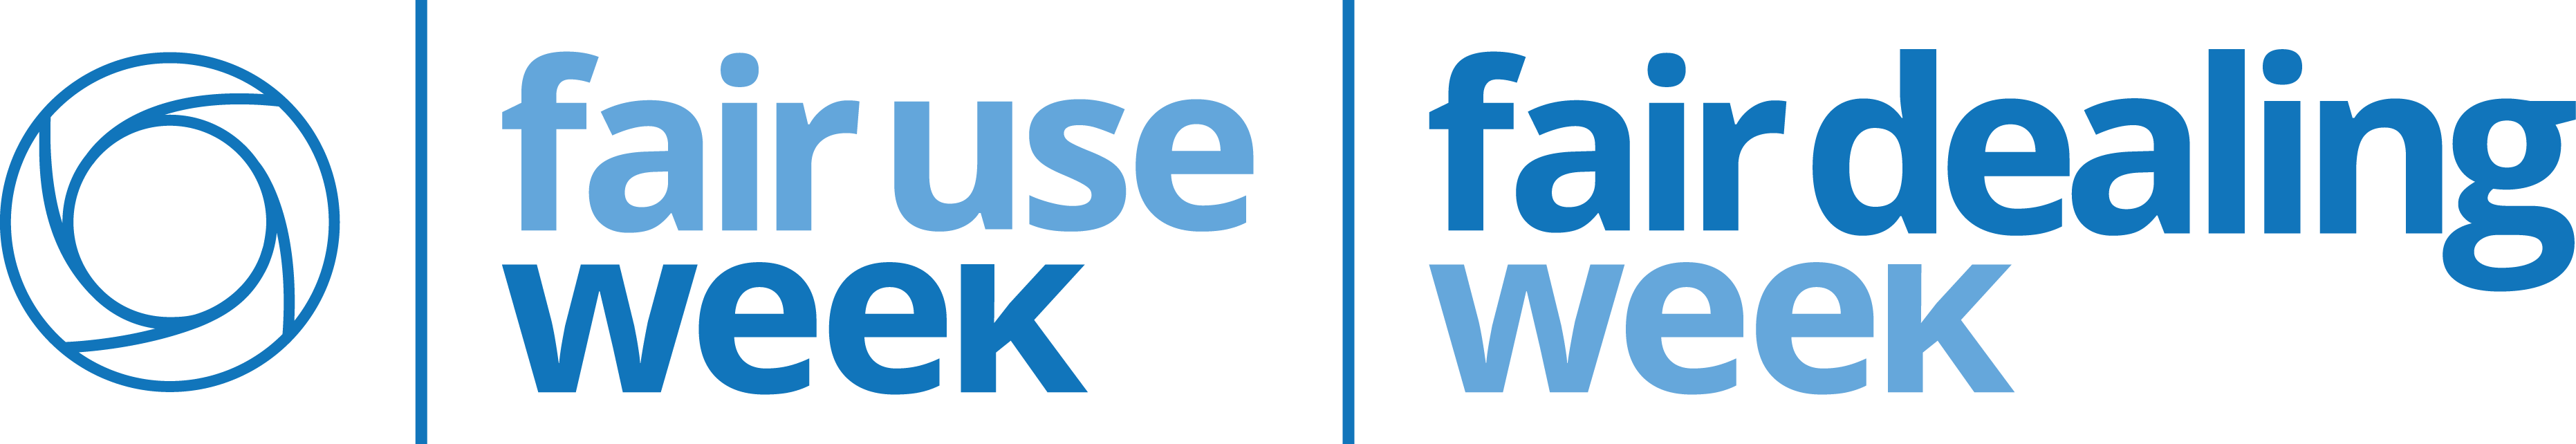 Fair Use Week and Fair Dealing Week logo